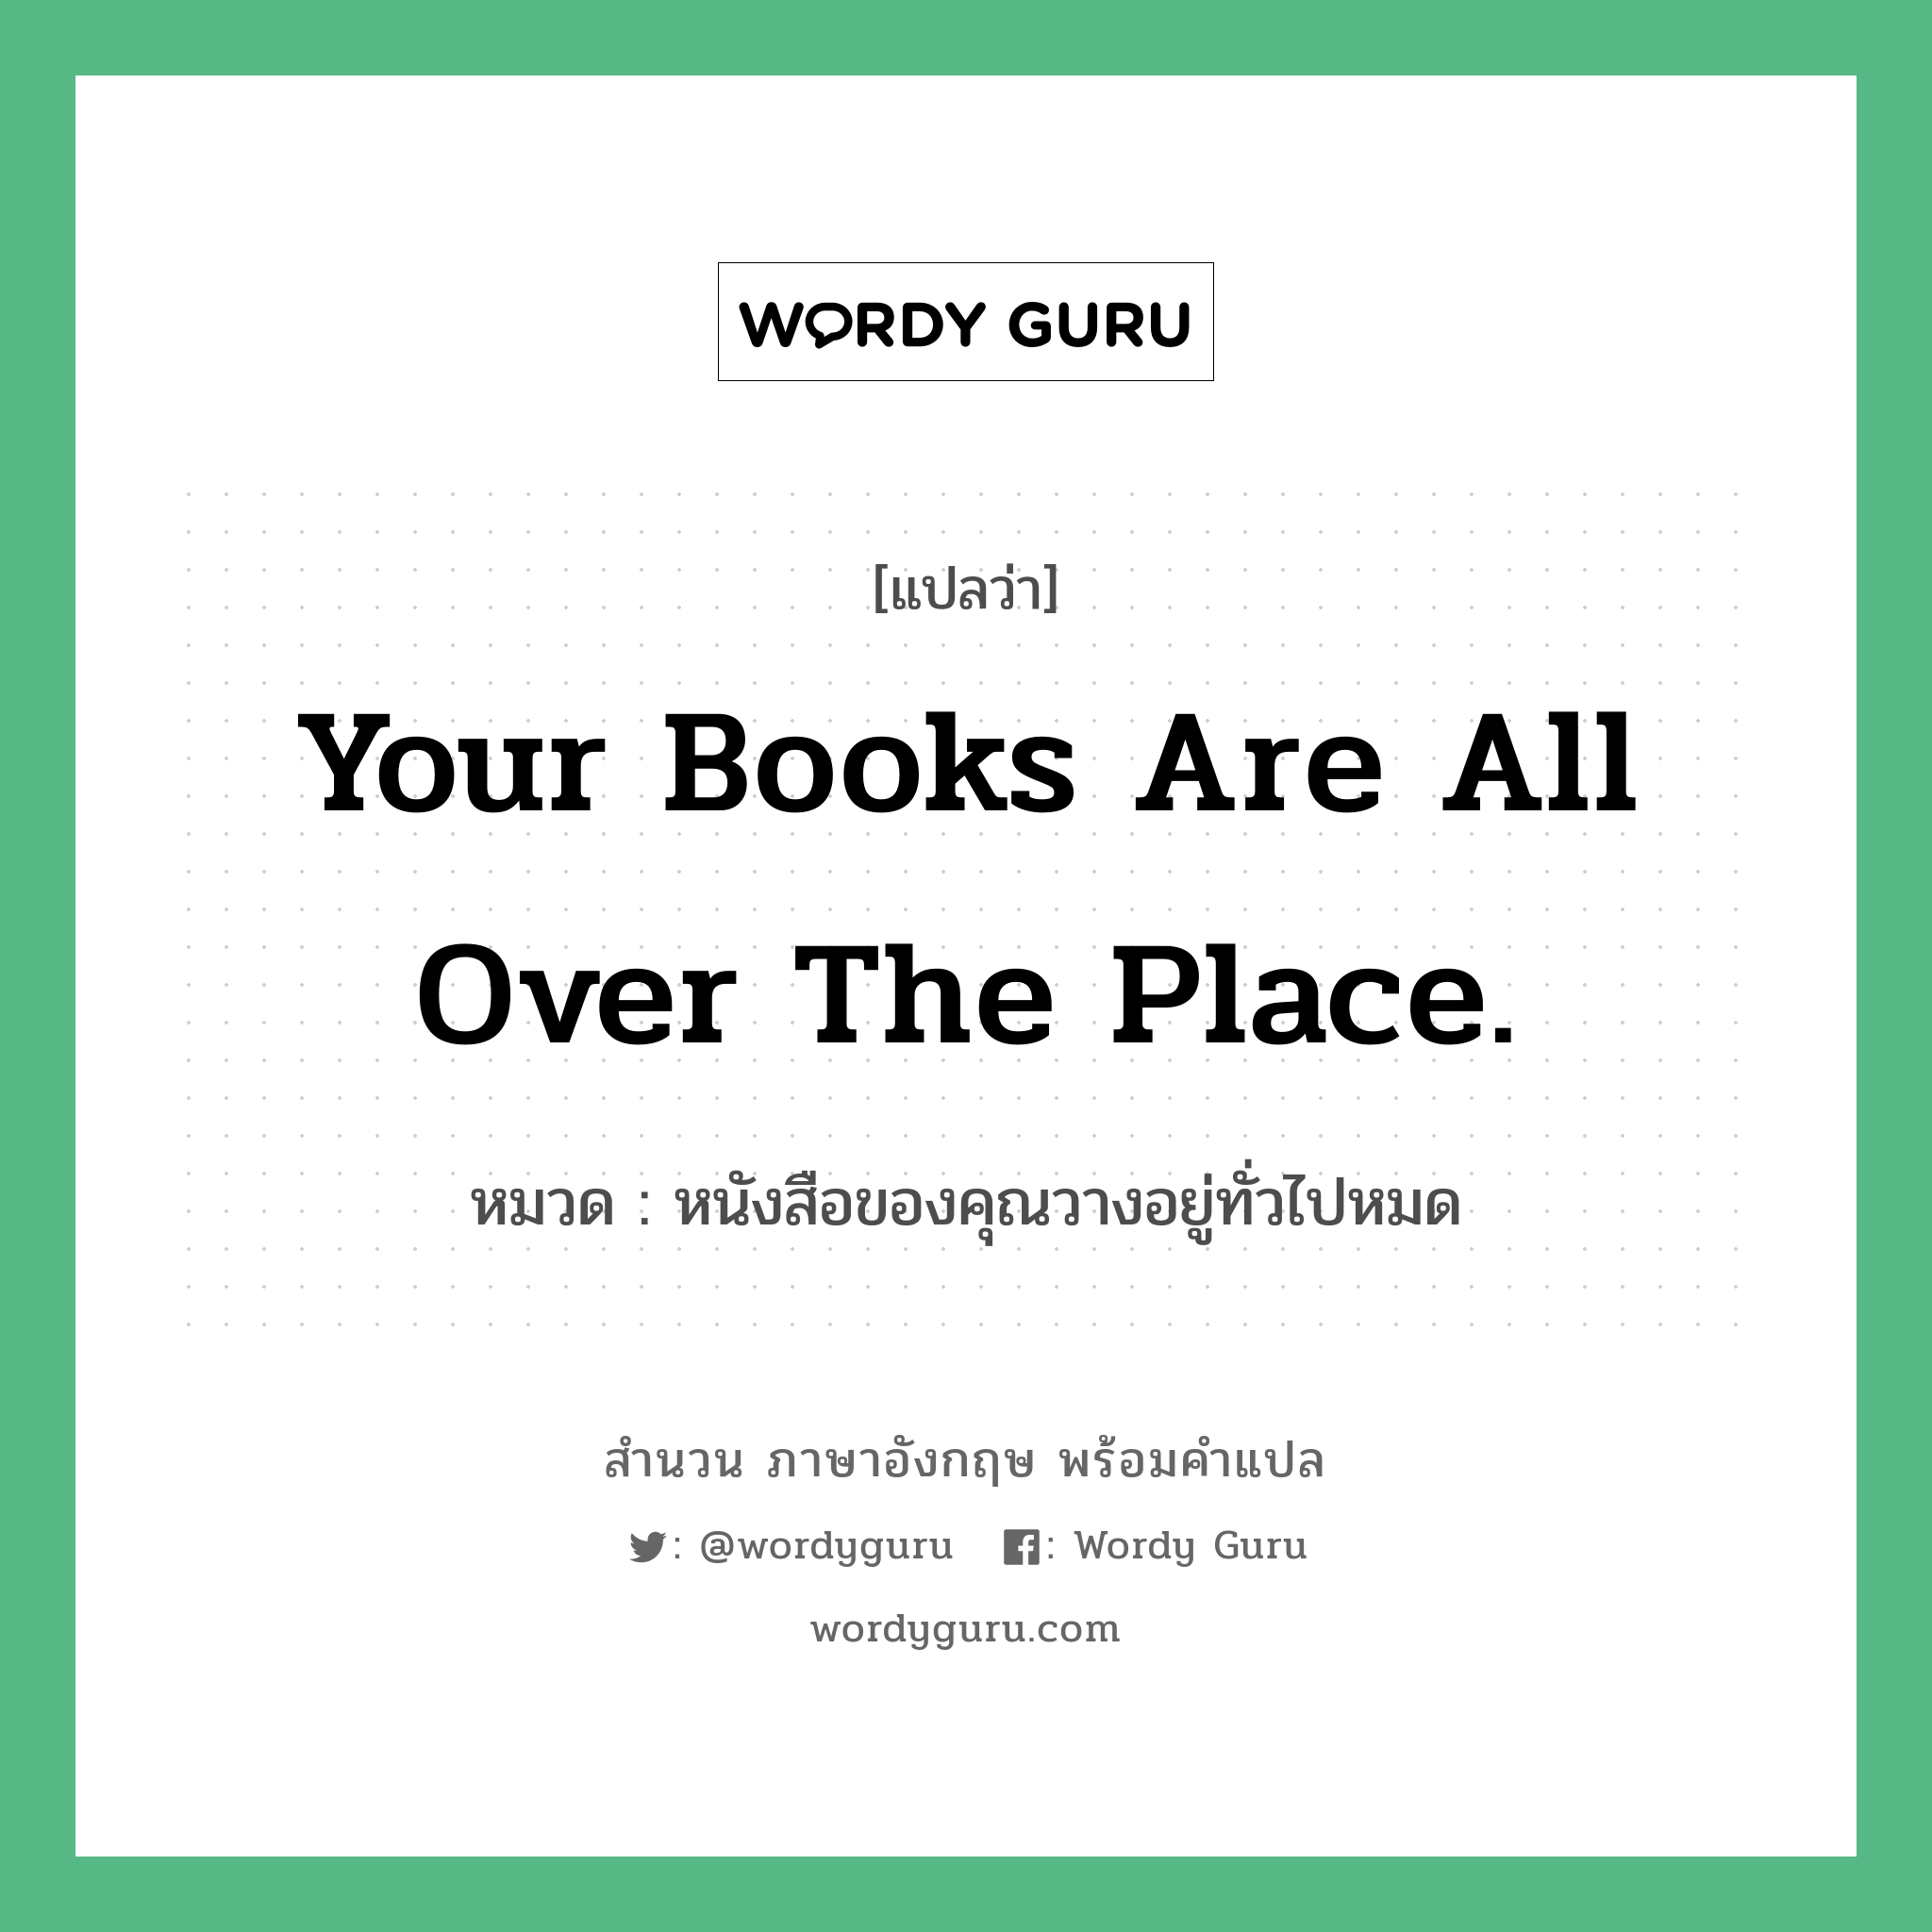 Your books are all over the place. แปลว่า?, สำนวนภาษาอังกฤษ Your books are all over the place. หมวด หนังสือของคุณวางอยู่ทั่วไปหมด